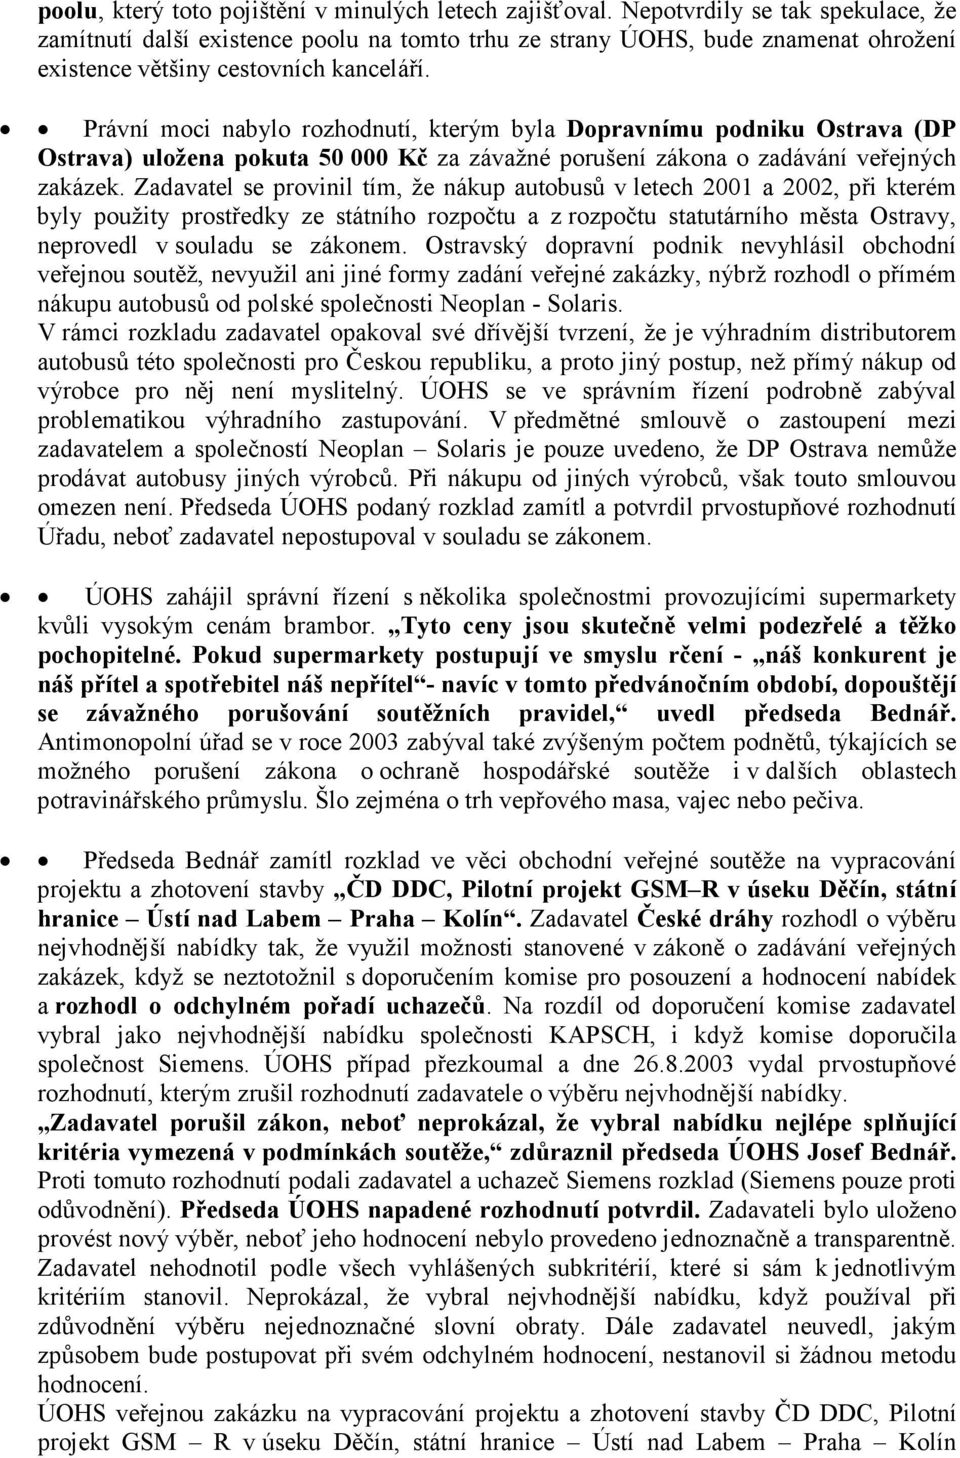 Právní moci nabylo rozhodnutí, kterým byla Dopravnímu podniku Ostrava (DP Ostrava) uložena pokuta 50 000 Kč za závažné porušení zákona o zadávání veřejných zakázek.